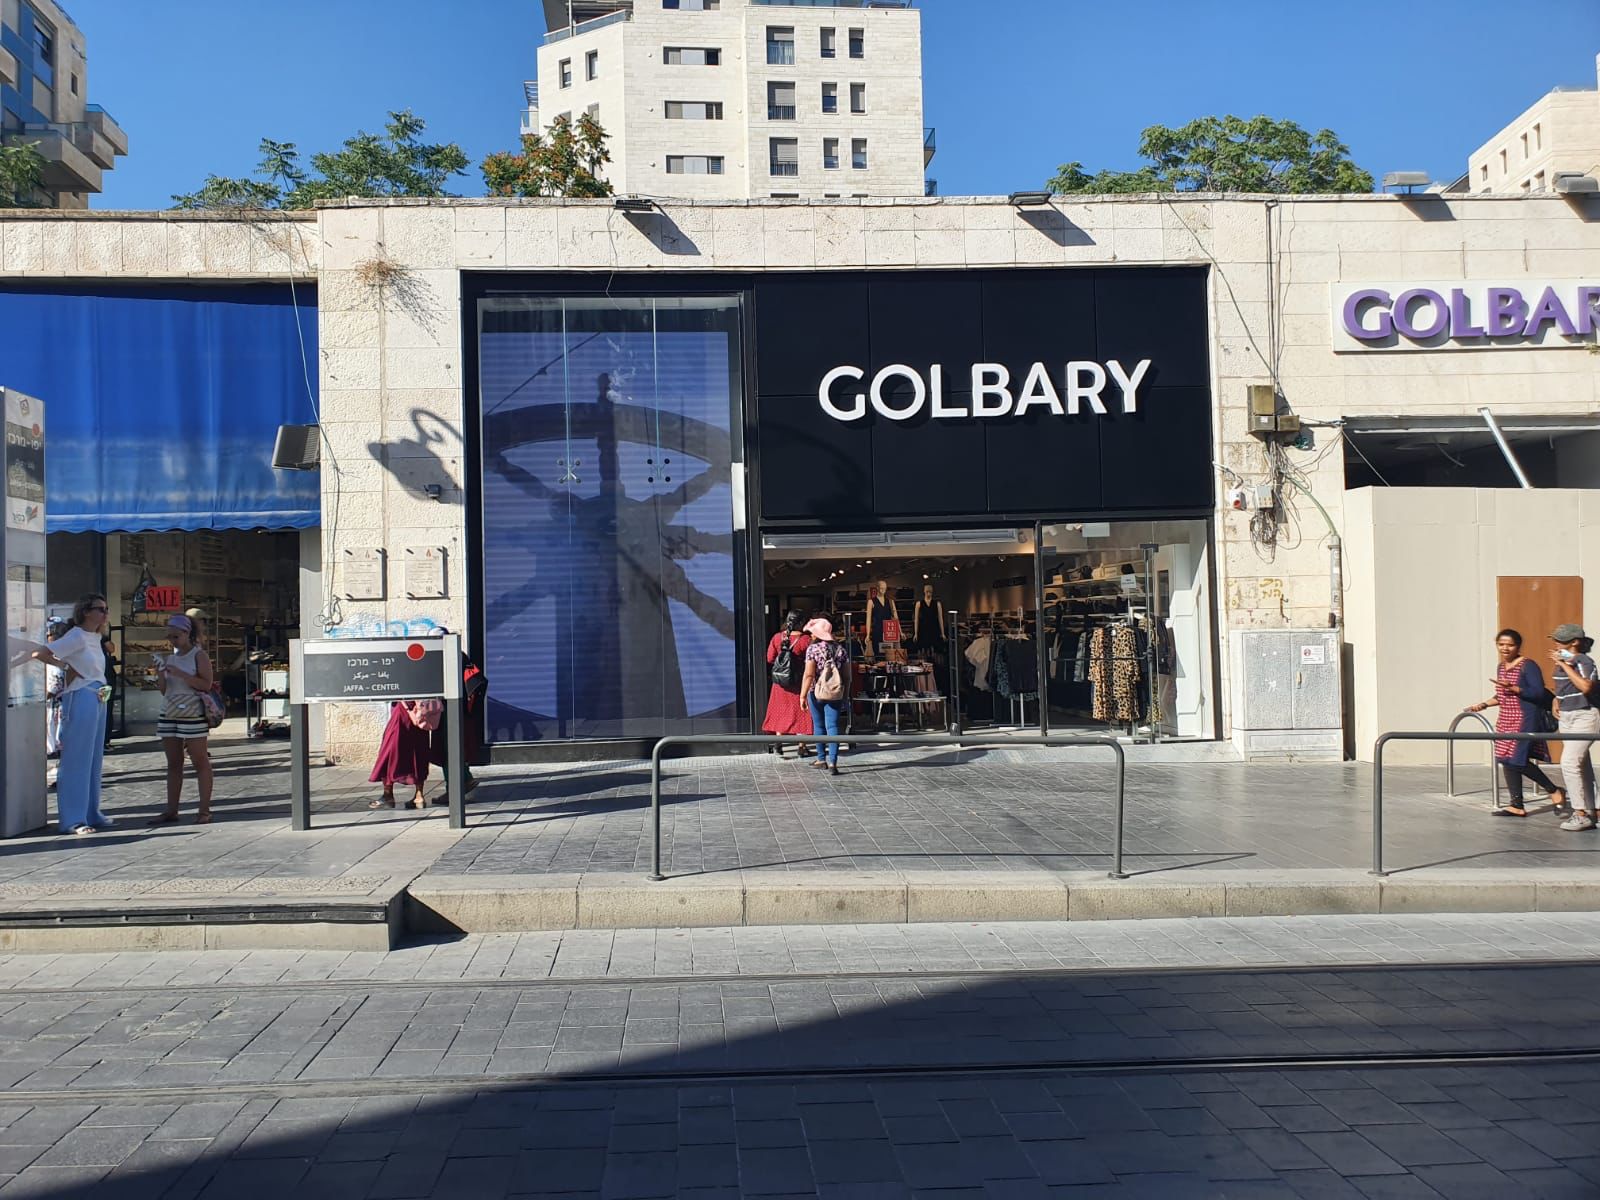 חנות ענק ראשונה לבית האופנה גולברי